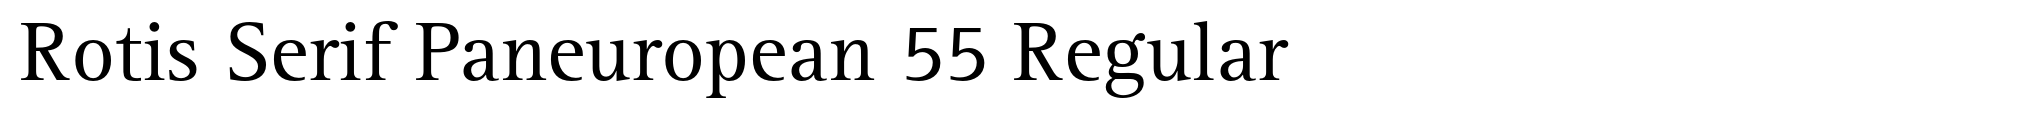 Rotis Serif Paneuropean 55 Regular image